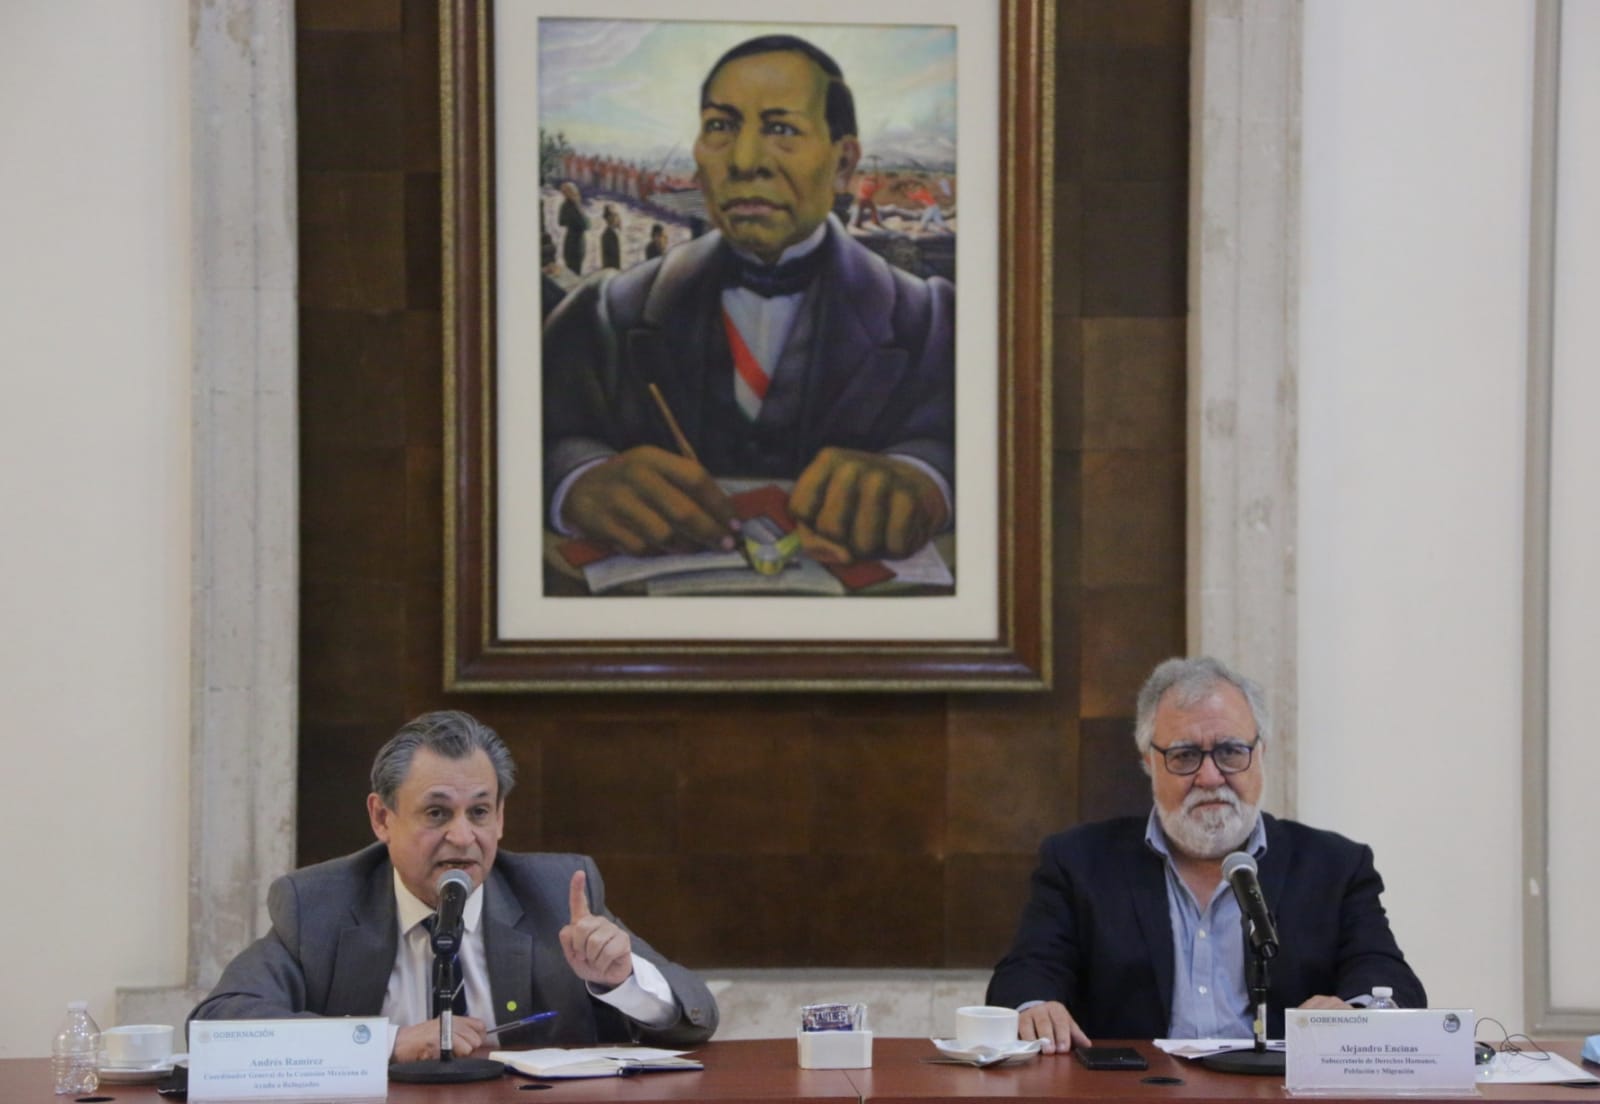 Solicitudes de refugio sin precedente, hay que fortalecer capacidades del Estado: subsecretario Alejandro Encinas